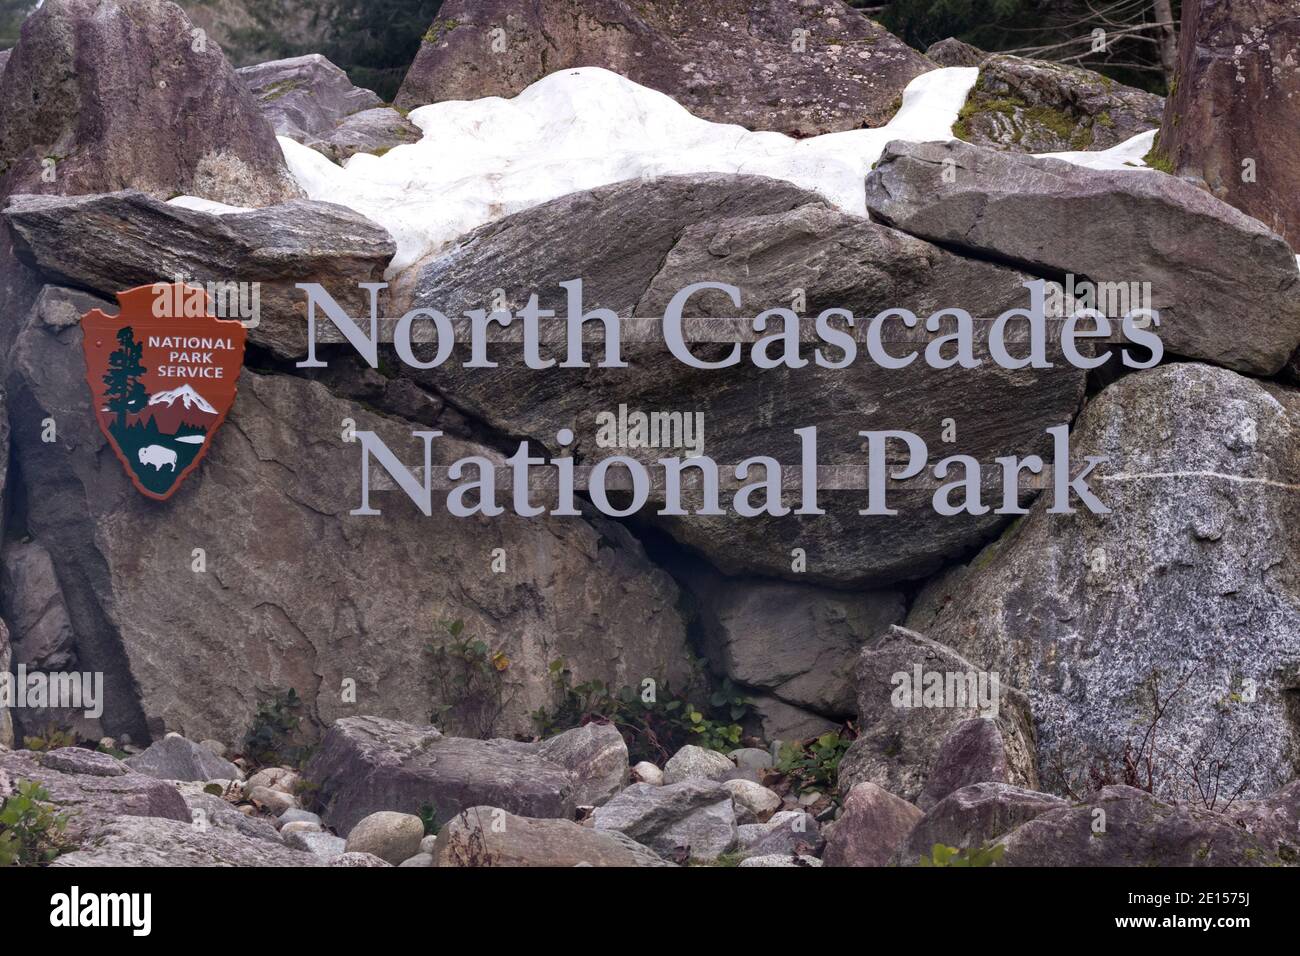 Panneau indiquant North Cascades National Park dans le nord de l'État de Washington, au cœur de la chaîne de montagnes Cascade. Neige dans les rochers et les rochers autour de t Banque D'Images